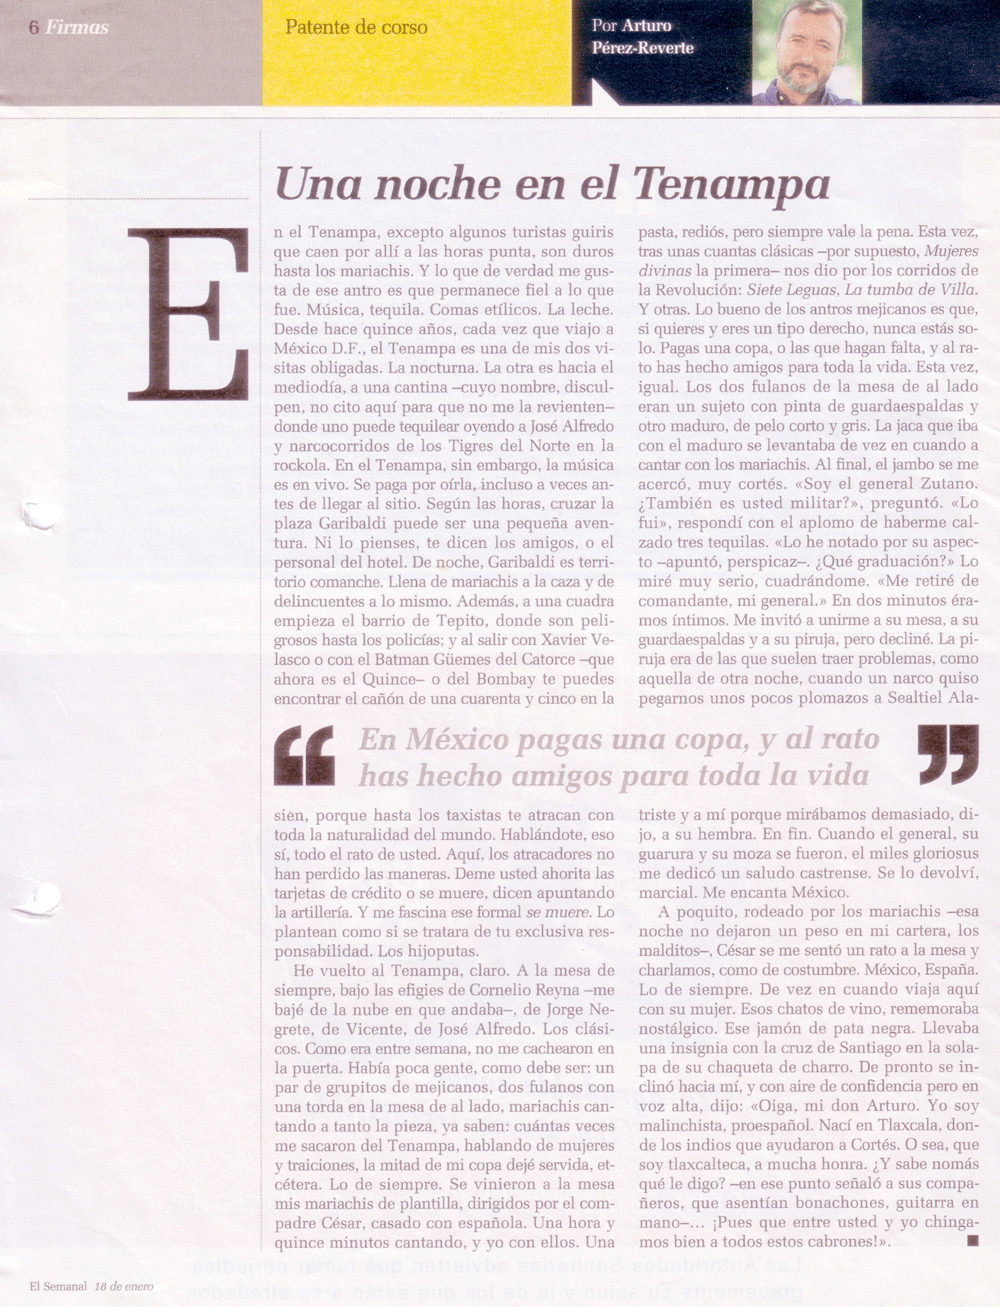 "Una noche en el Tenampa" El Semanal, 18 de enero de 2007